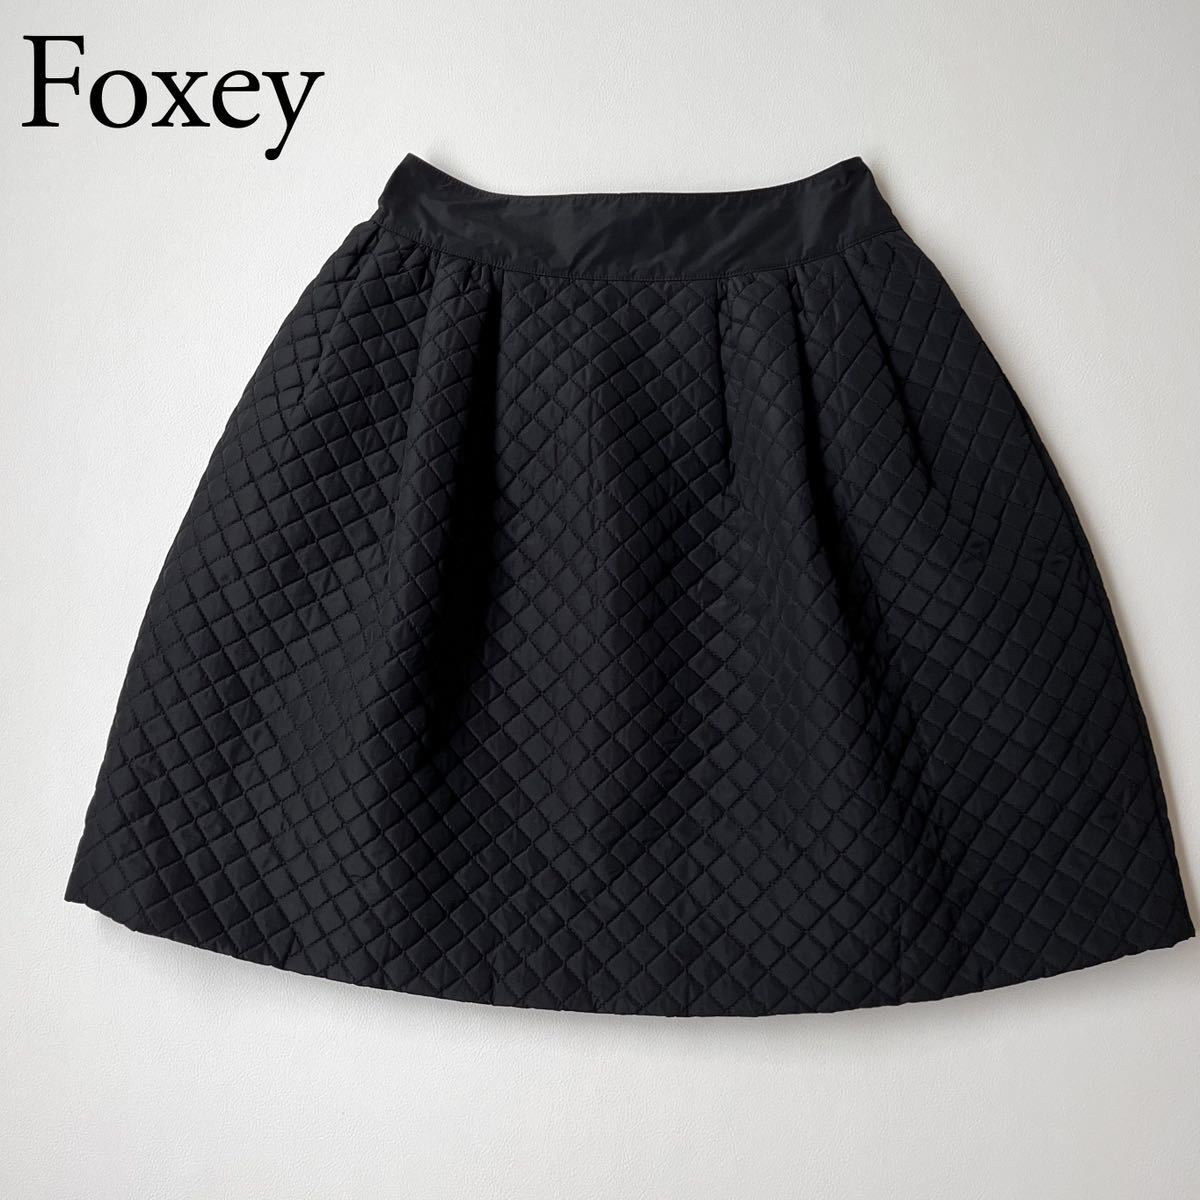 FOXEY フォクシー フレアスカート キルティングスカート 膝丈スカート